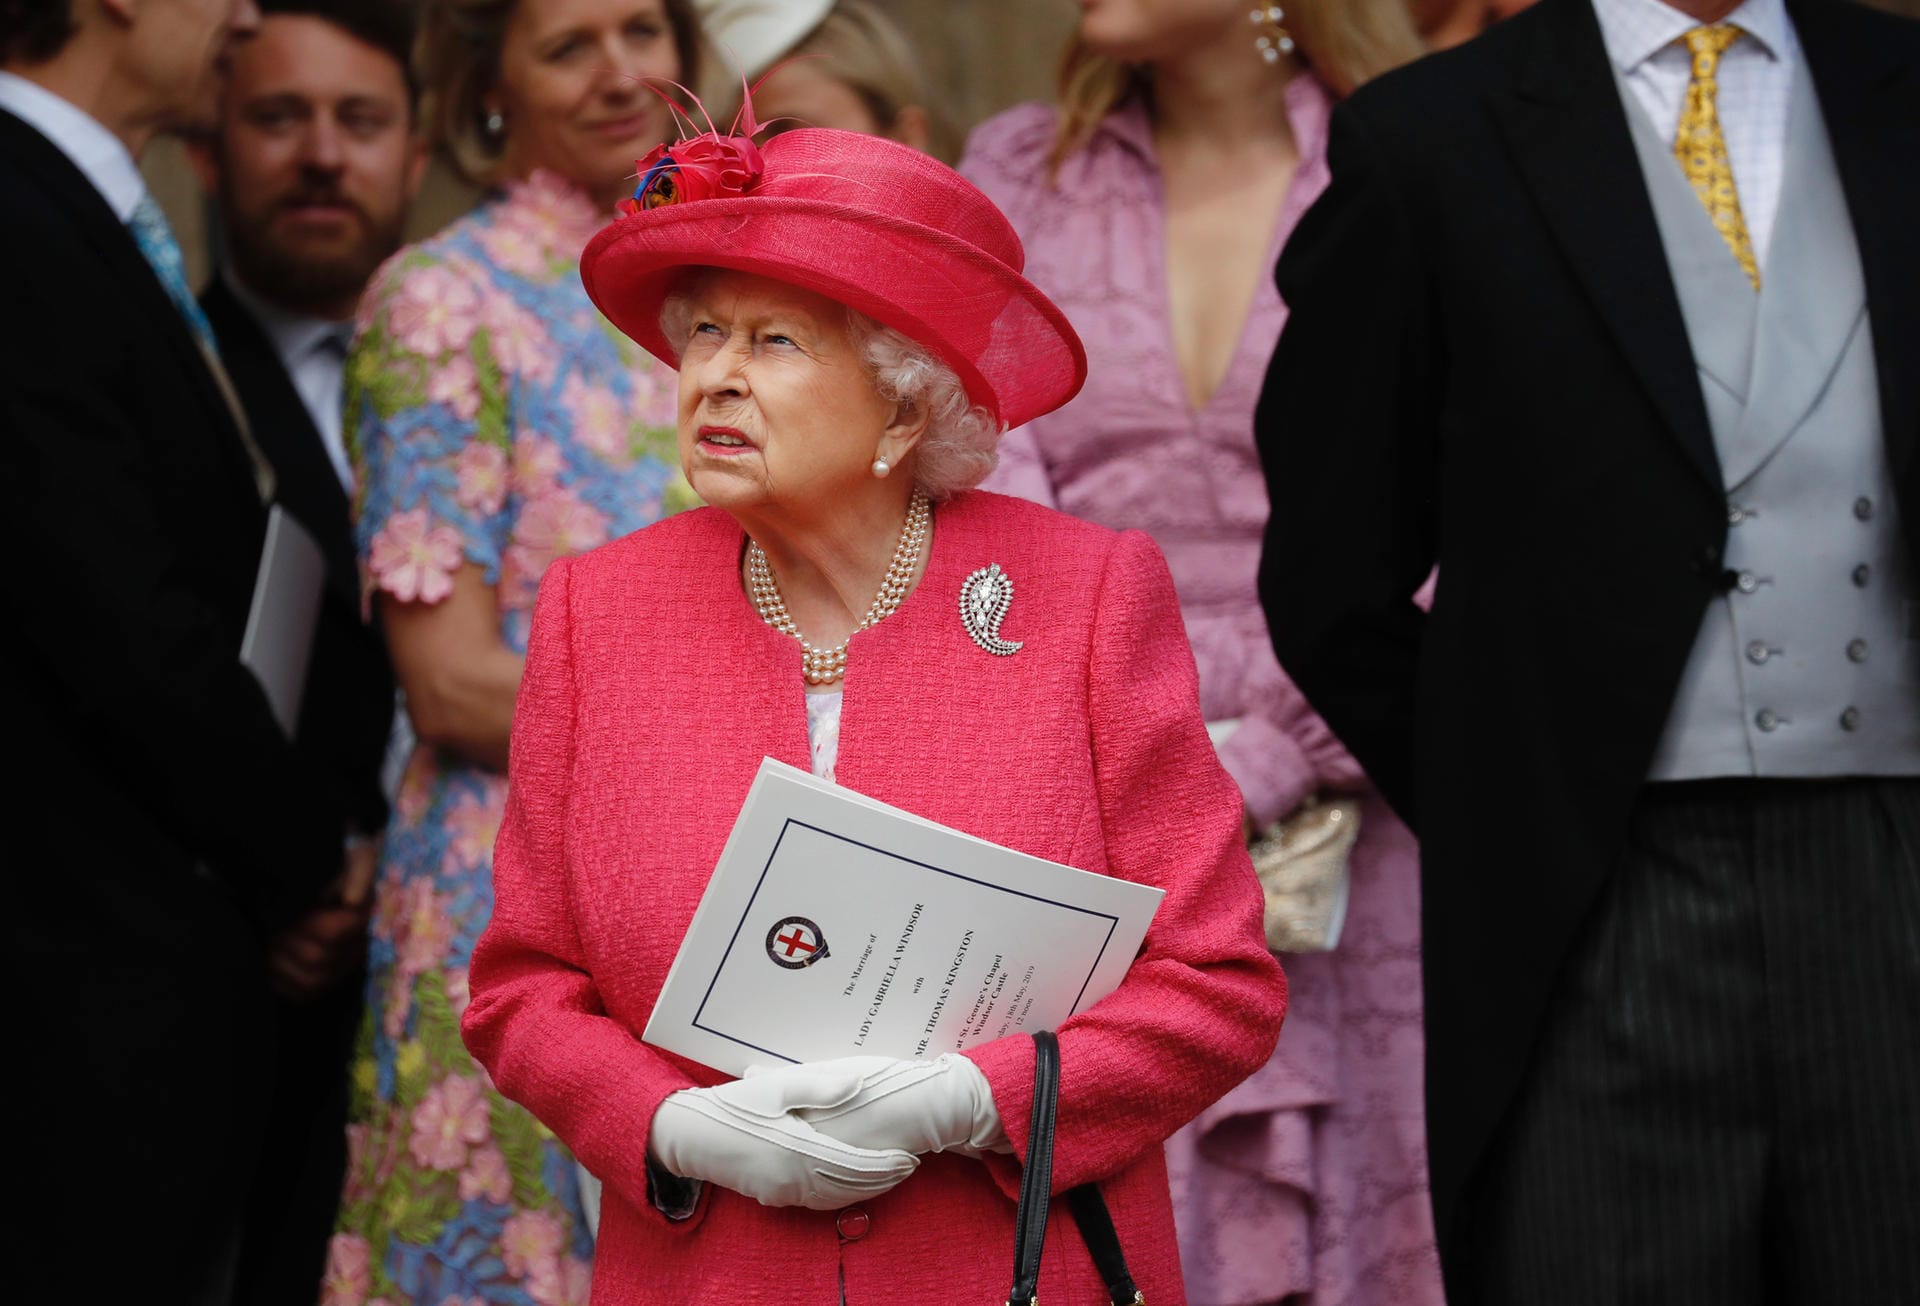 Königin Elizabeth kam in einem fuchsiefarbenen Outfit.